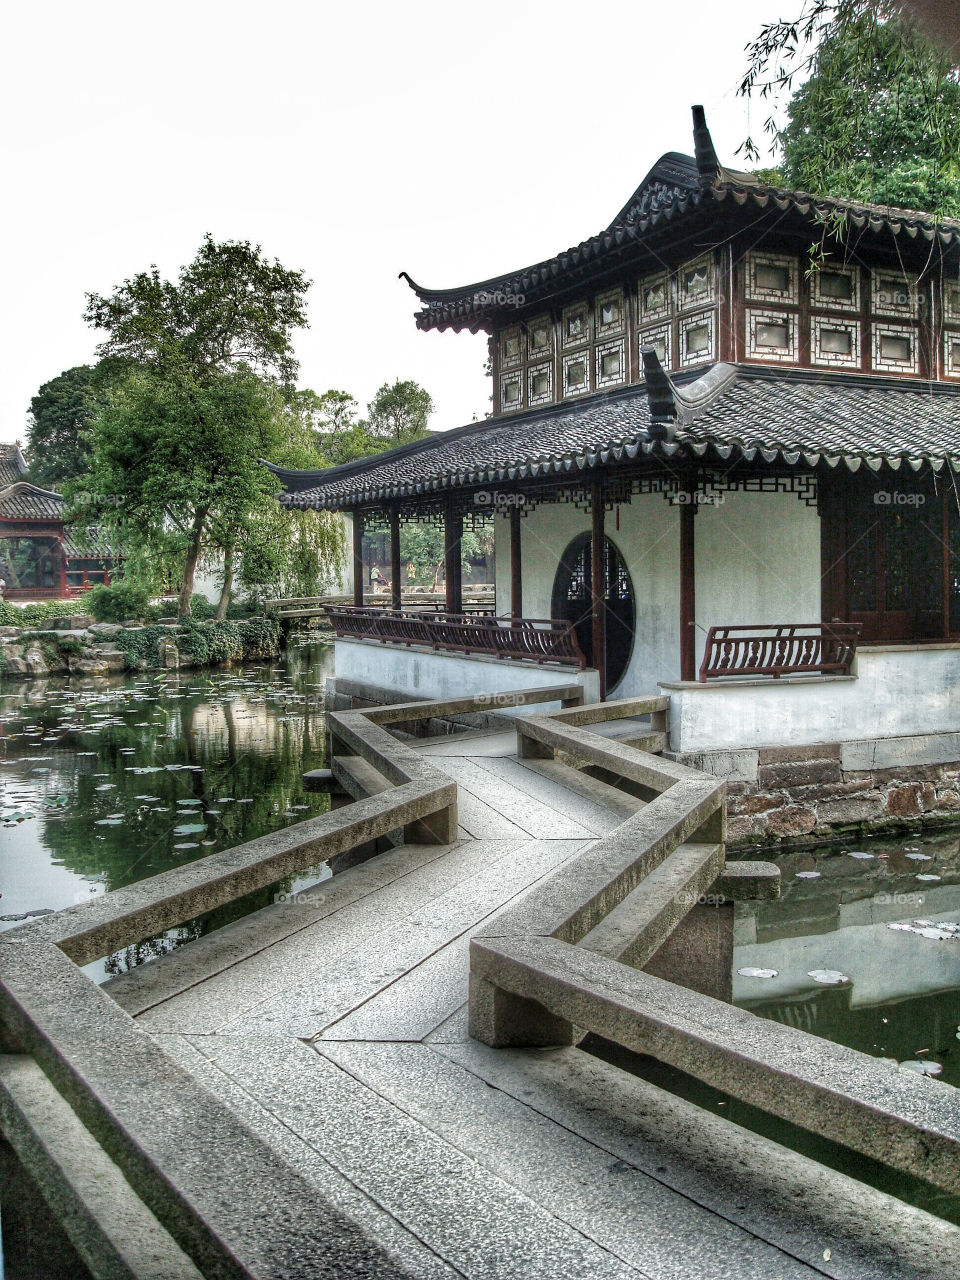 Administrative Gardens - China